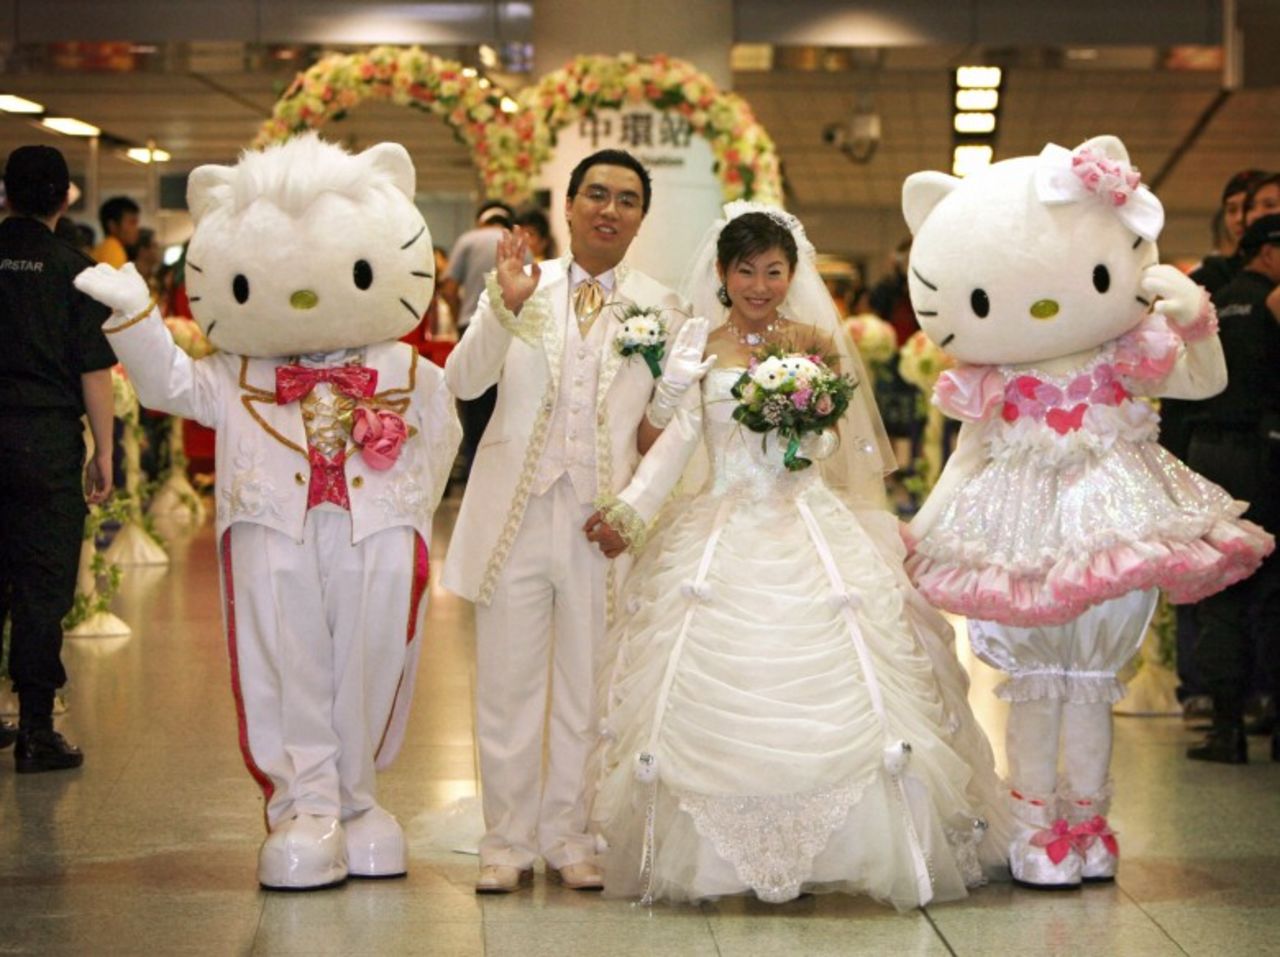 Jamie Ng y Horlick Ng se toman una fotografía junto a los personajes de Hello Kitty y Dear Daniel durante una "Boda soñada de Hello Kitty" en Hong Kong.